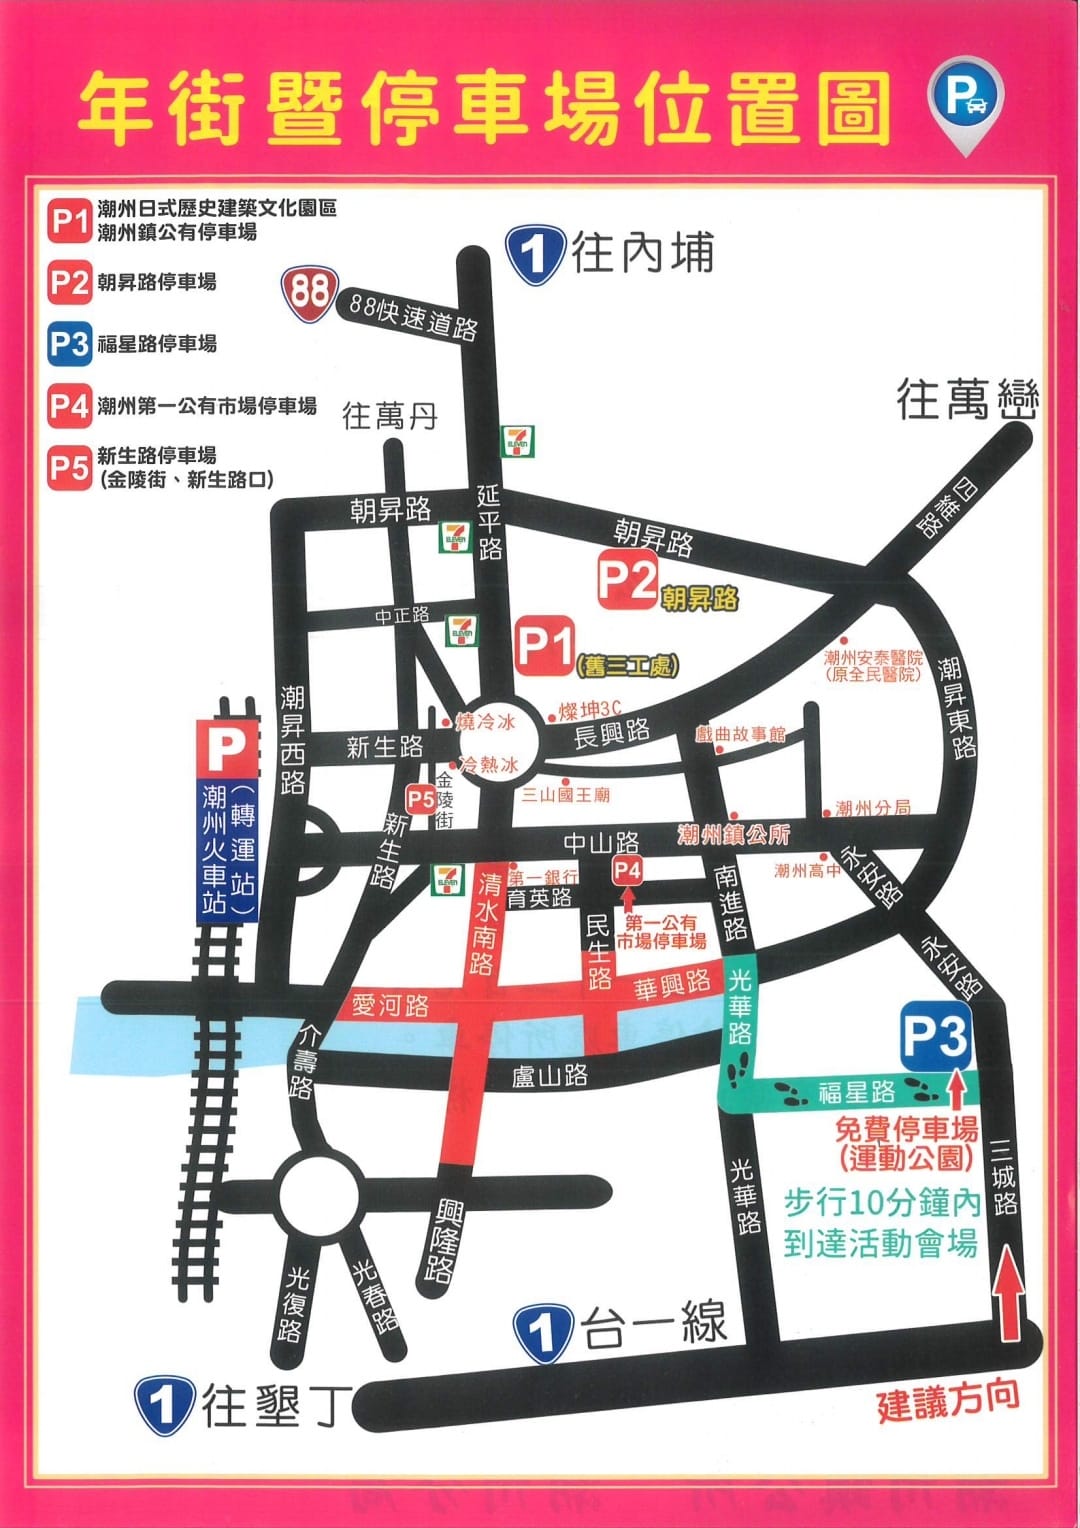 屏東「潮州春節市集」停車場、交通資訊一覽表